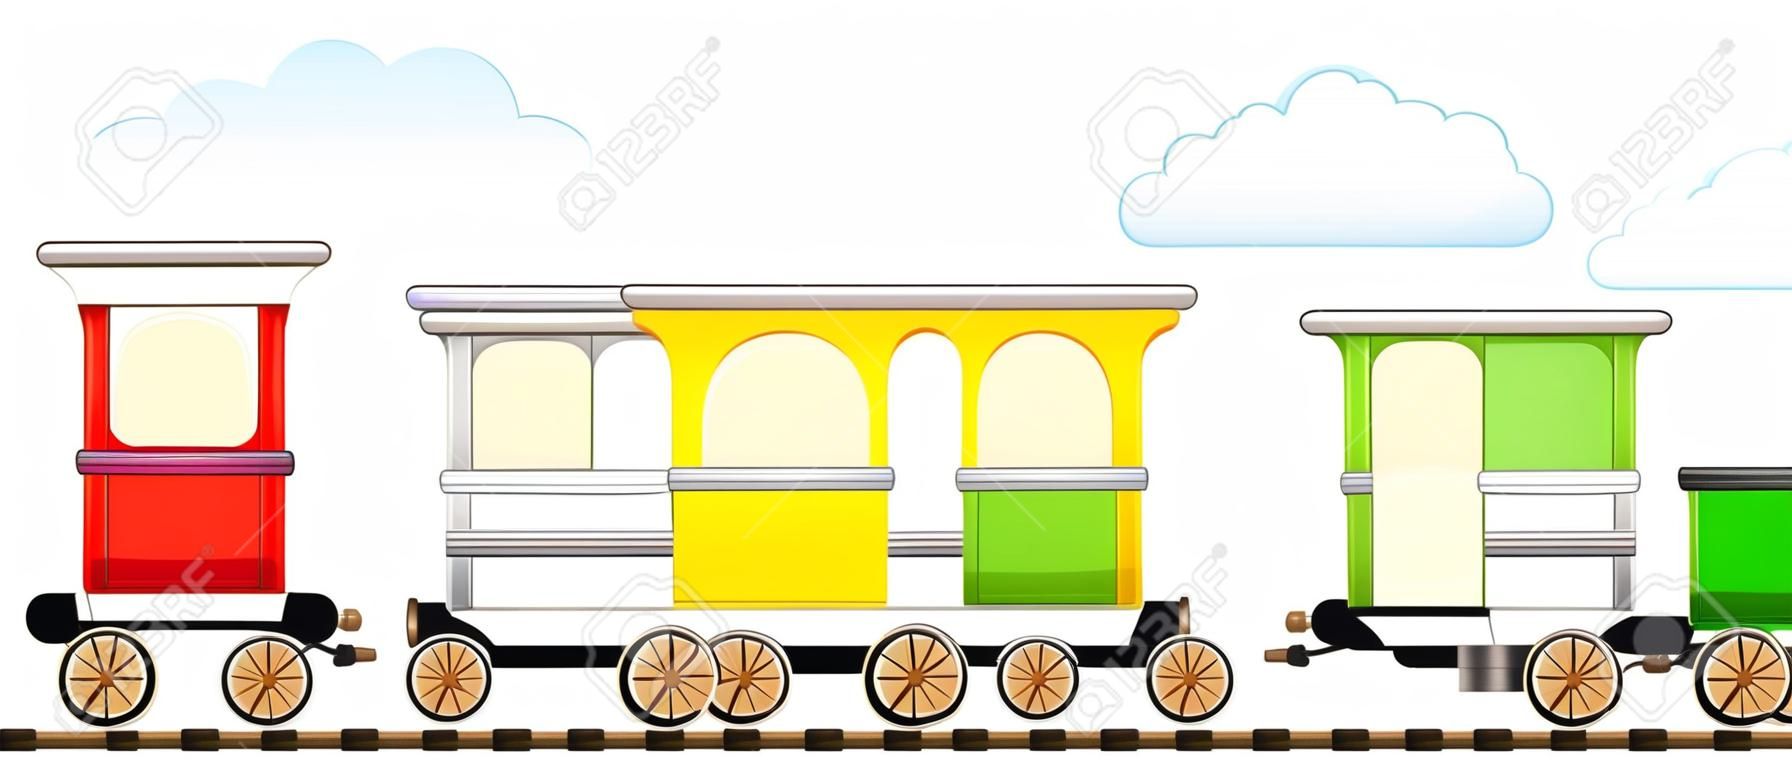 cartoon geïsoleerde schattige trein met kleurrijke koets in de spoorweg